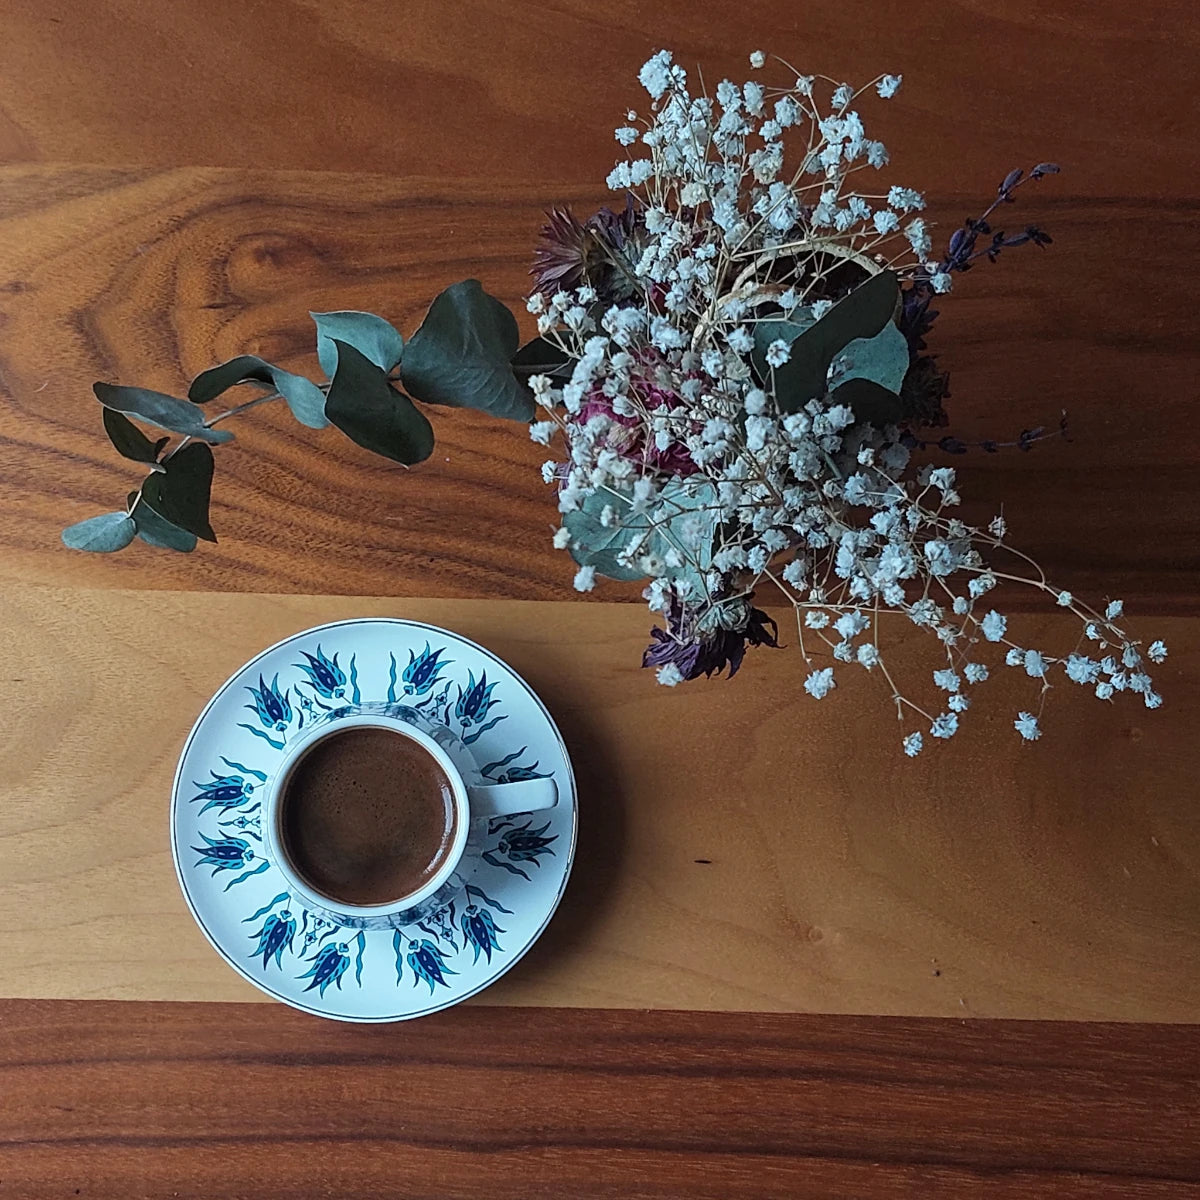 Üzerinde Türk kahvesi ve çiçek dekoru bulunan ve markamız Lagoma'yı yansıtan ahşap ürün